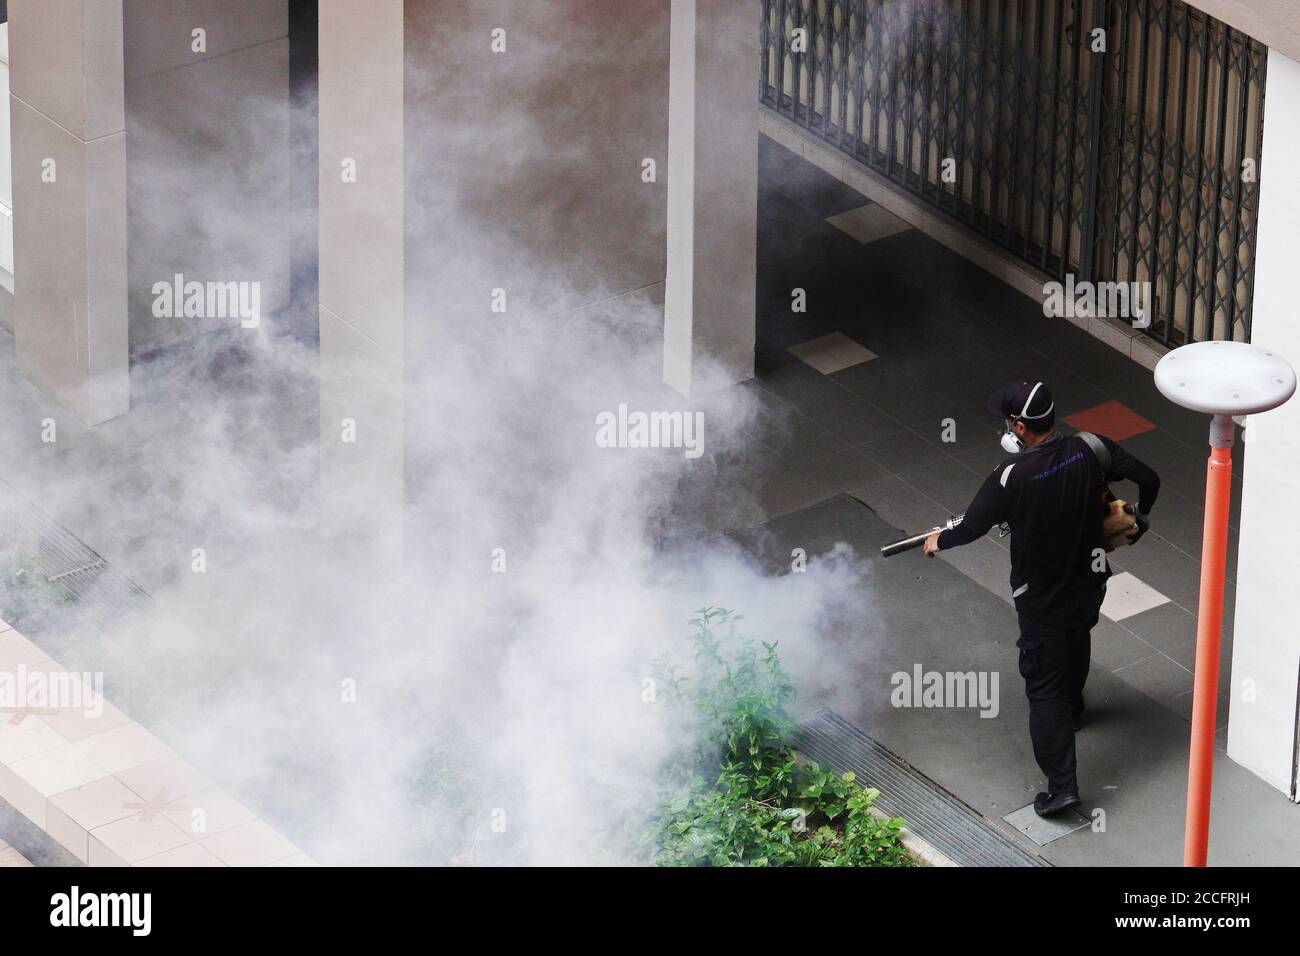 (200822) -- SINGAPORE, 22 agosto 2020 (Xinhua) -- UN operaio fumiga un bene immobiliare pubblico per uccidere le zanzare Aedes come parte della prevenzione contro le infezioni da dengue a Singapore, 22 agosto 2020. (Foto di allora Chih Wey/Xinhua) Foto Stock